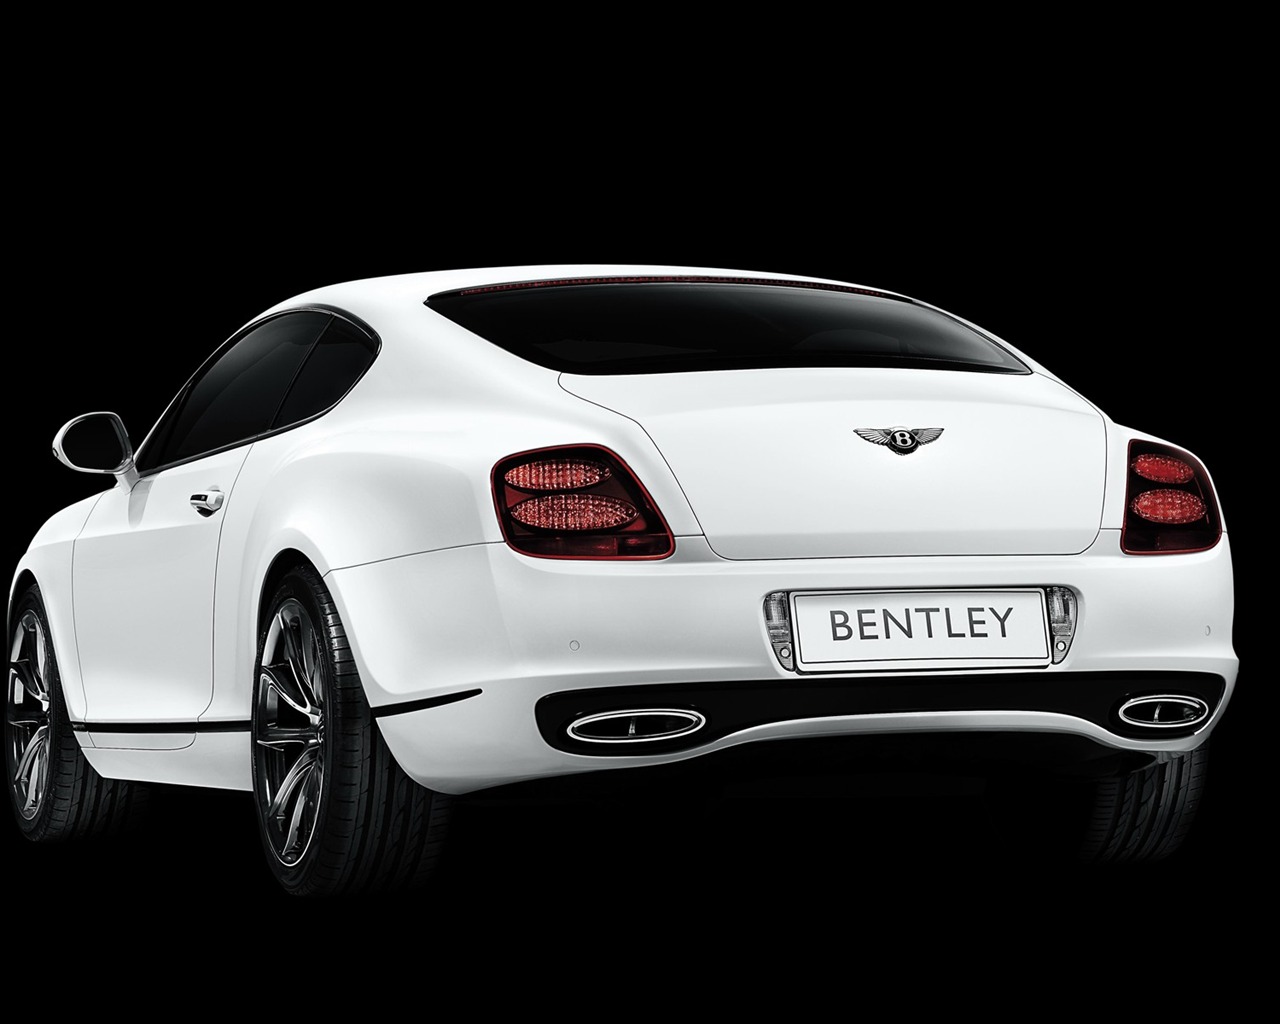 Bentley 宾利 壁纸专辑(一)3 - 1280x1024